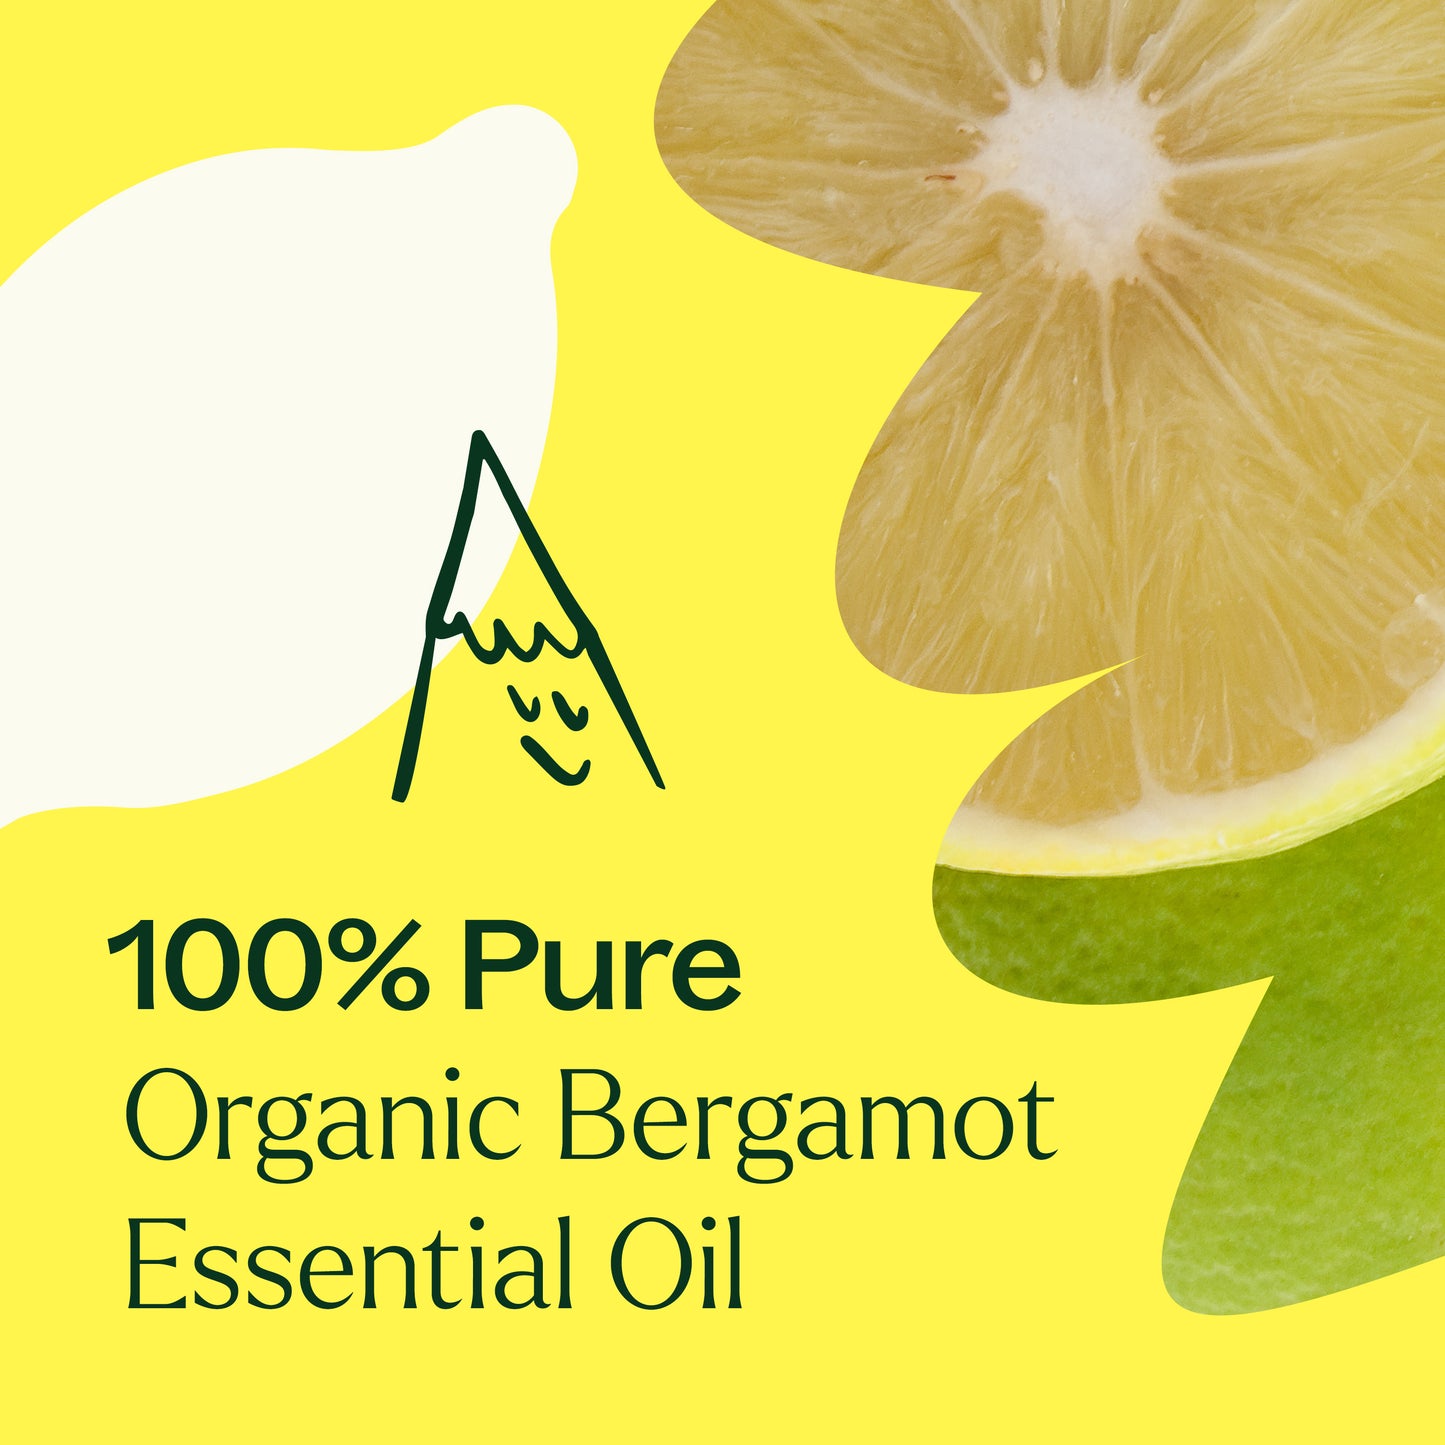 100% Pure Organic Bergamot Essential Oil